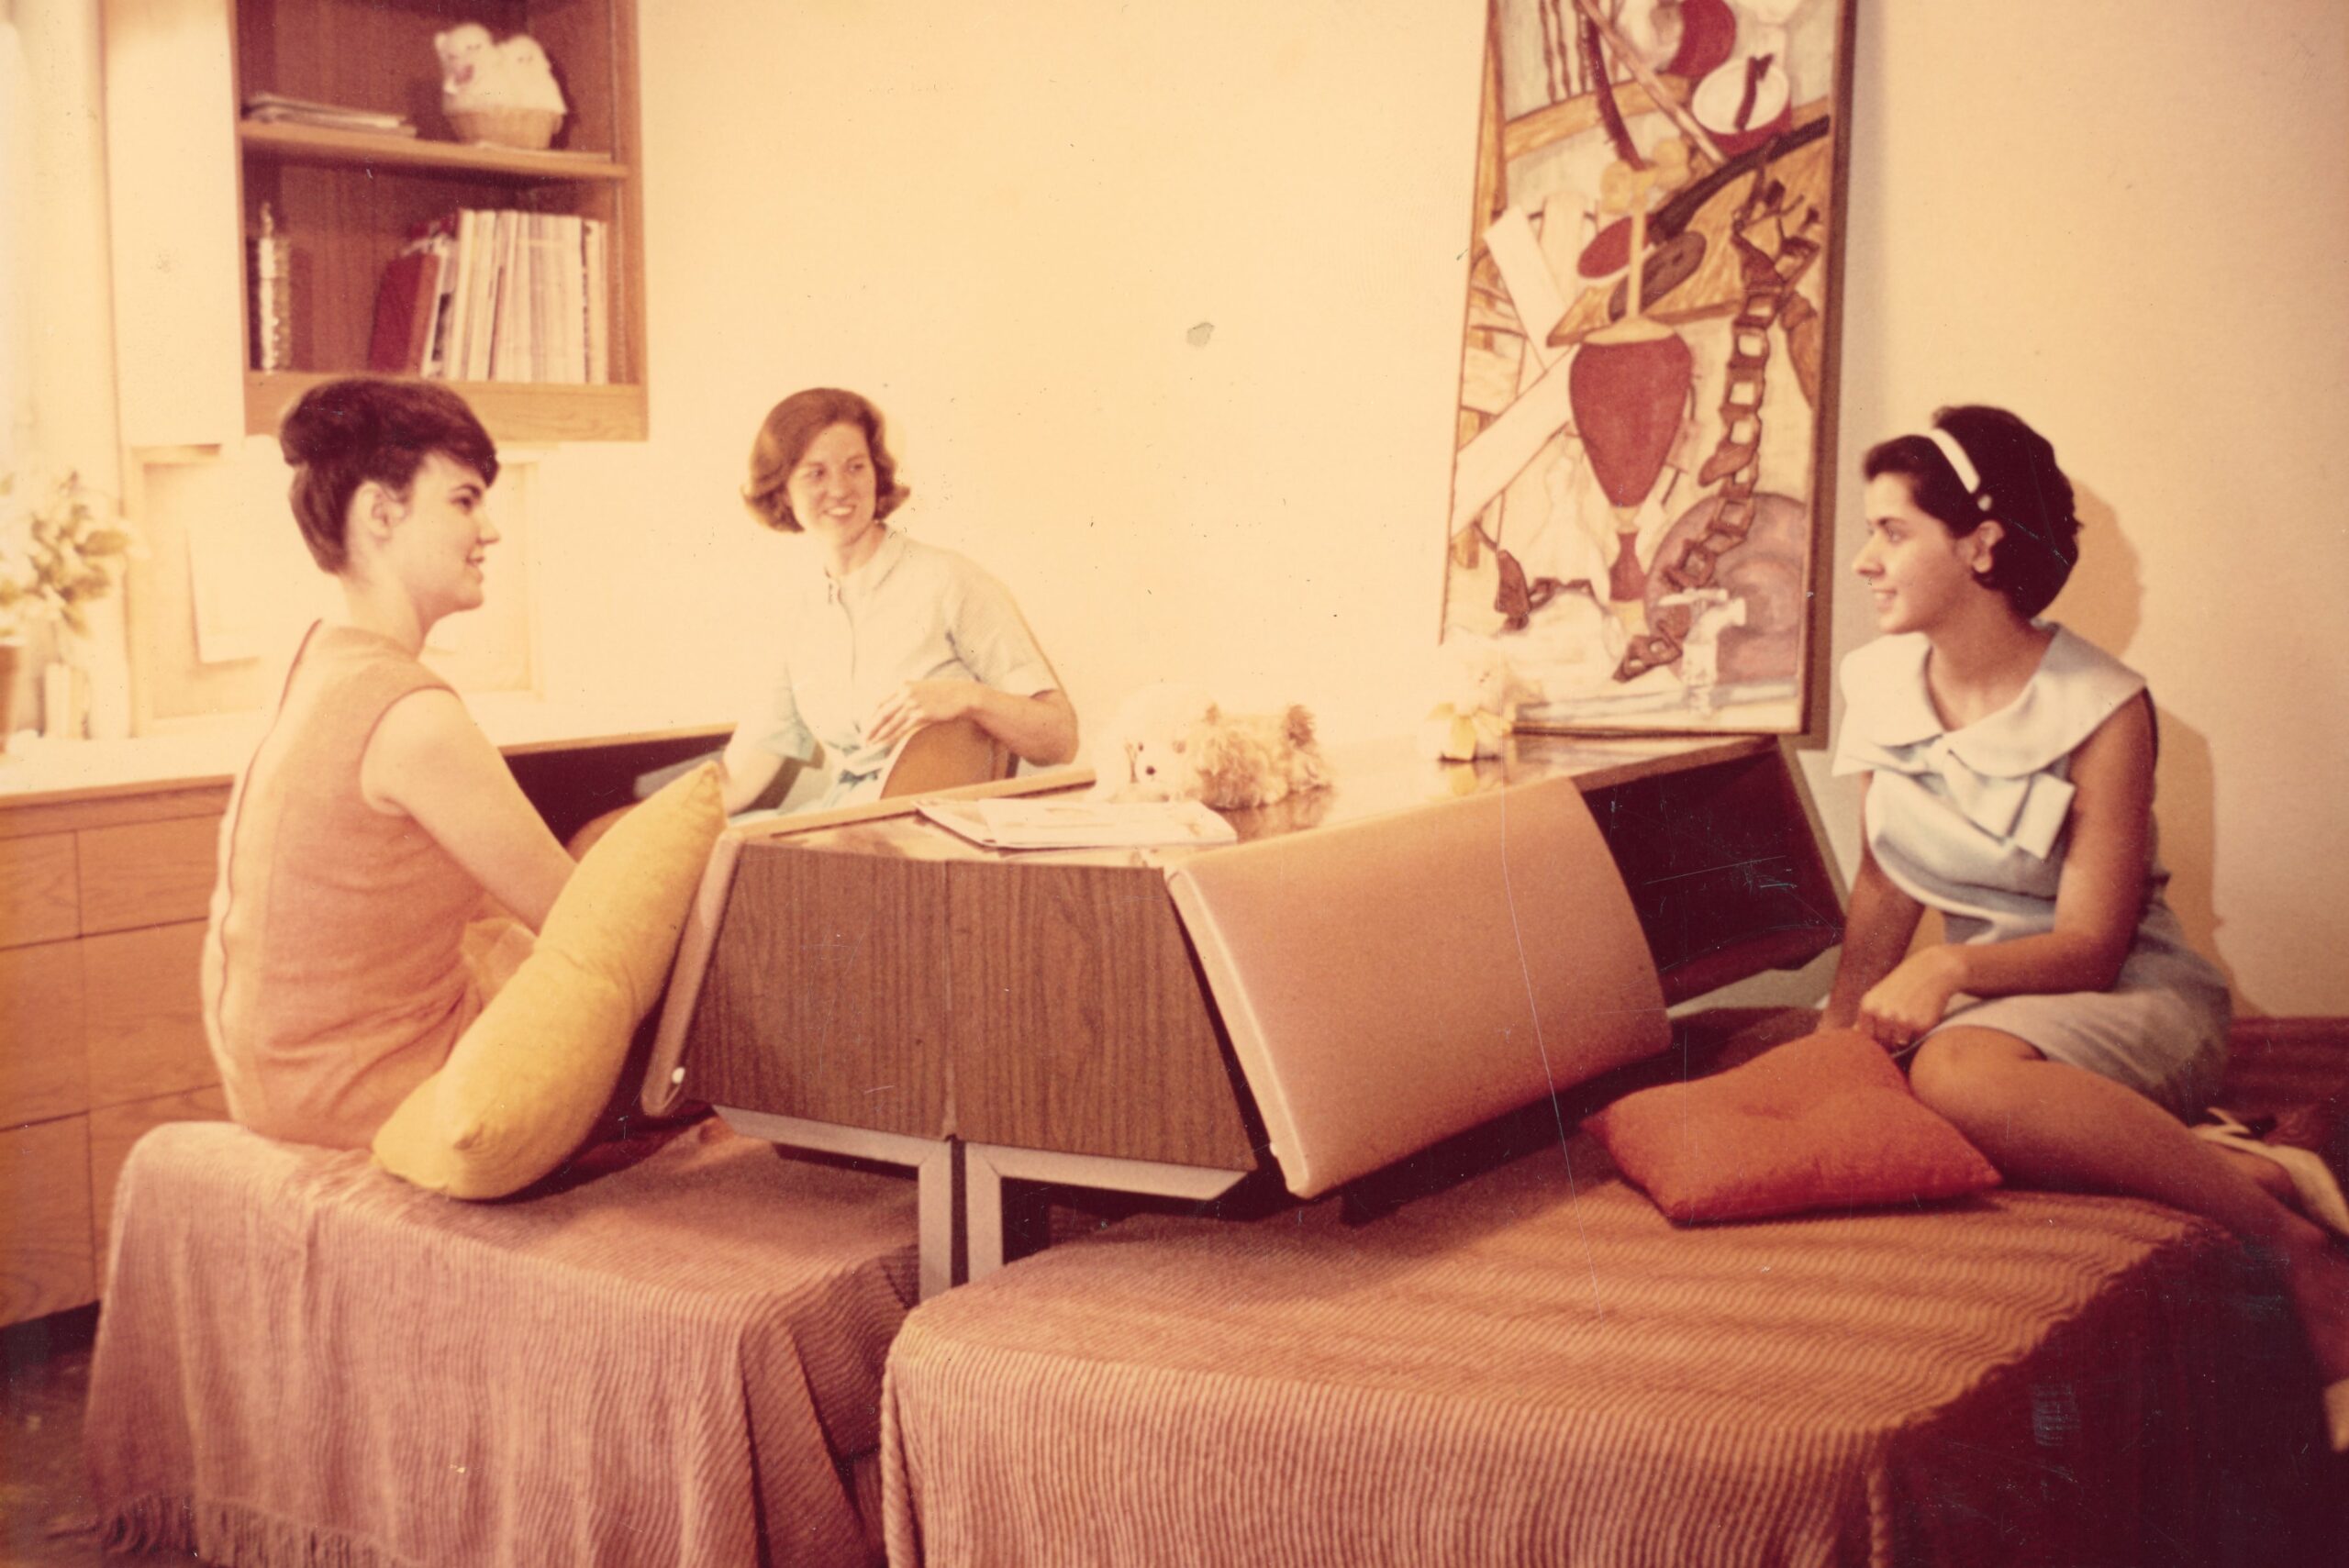 Dorm life (1970s)